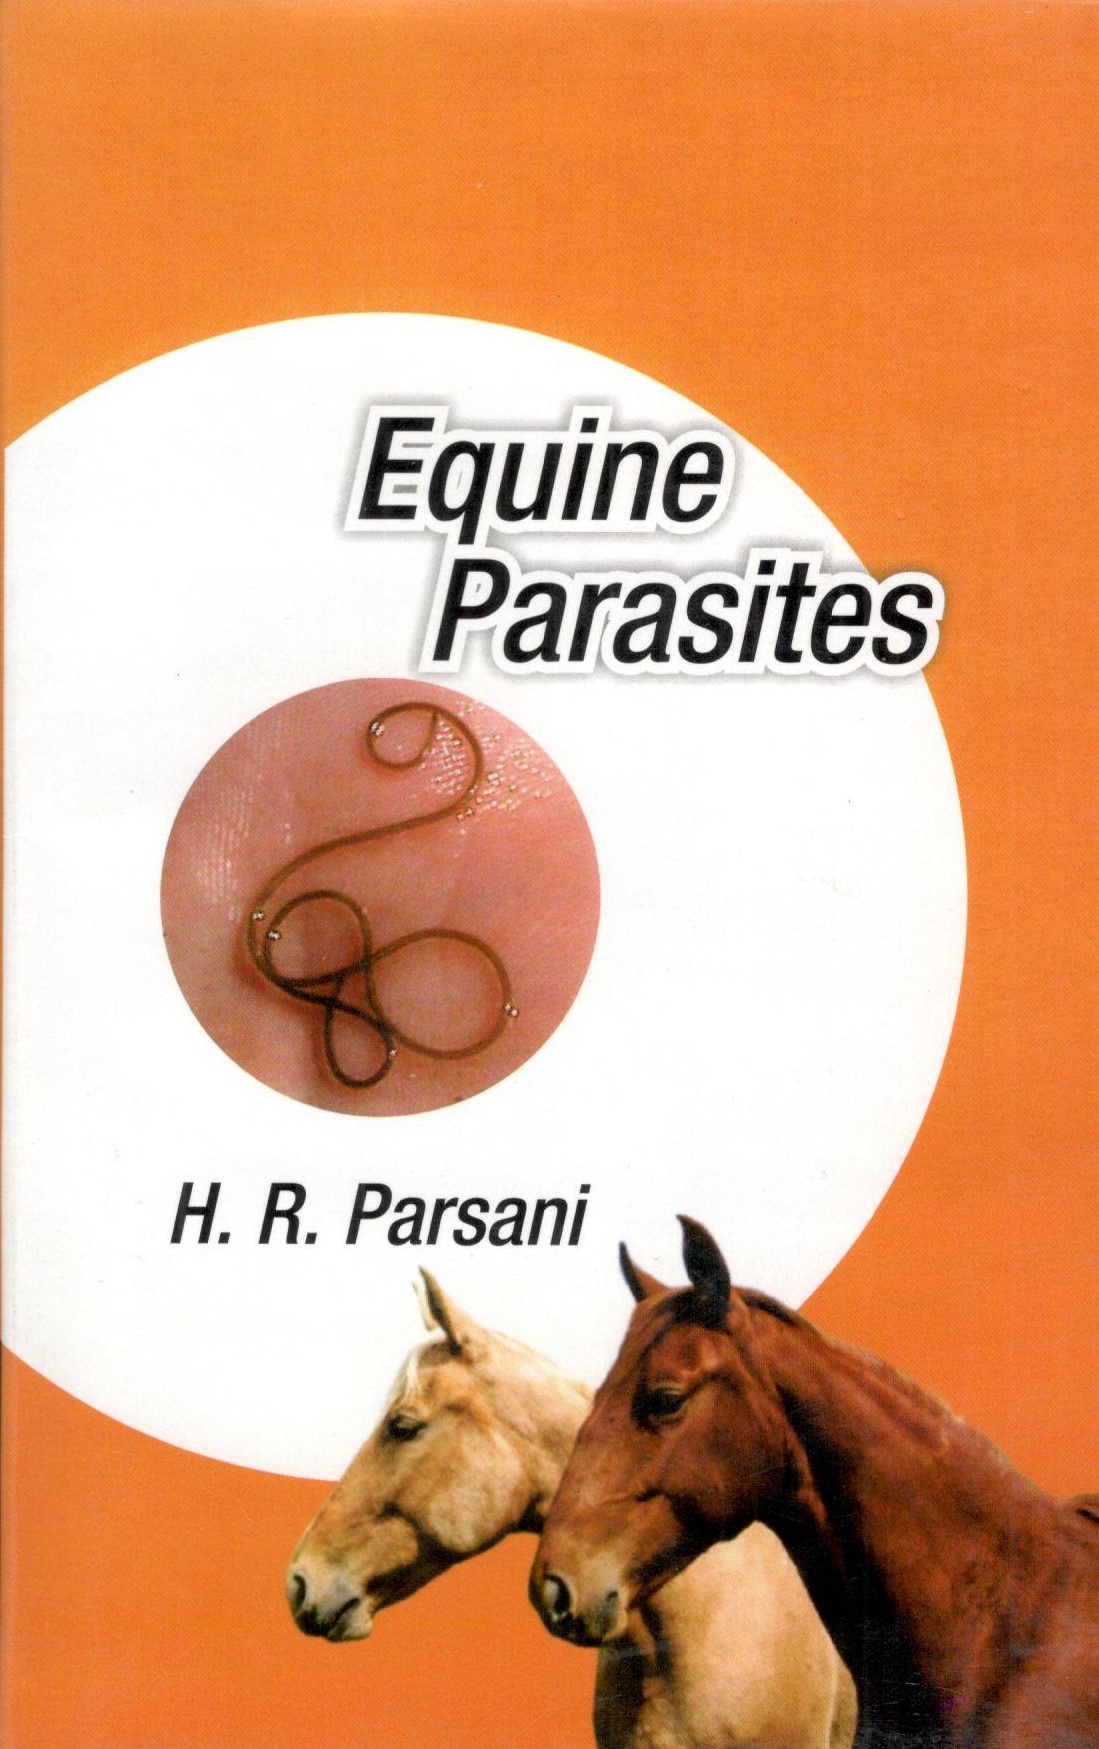 Equine Parasites